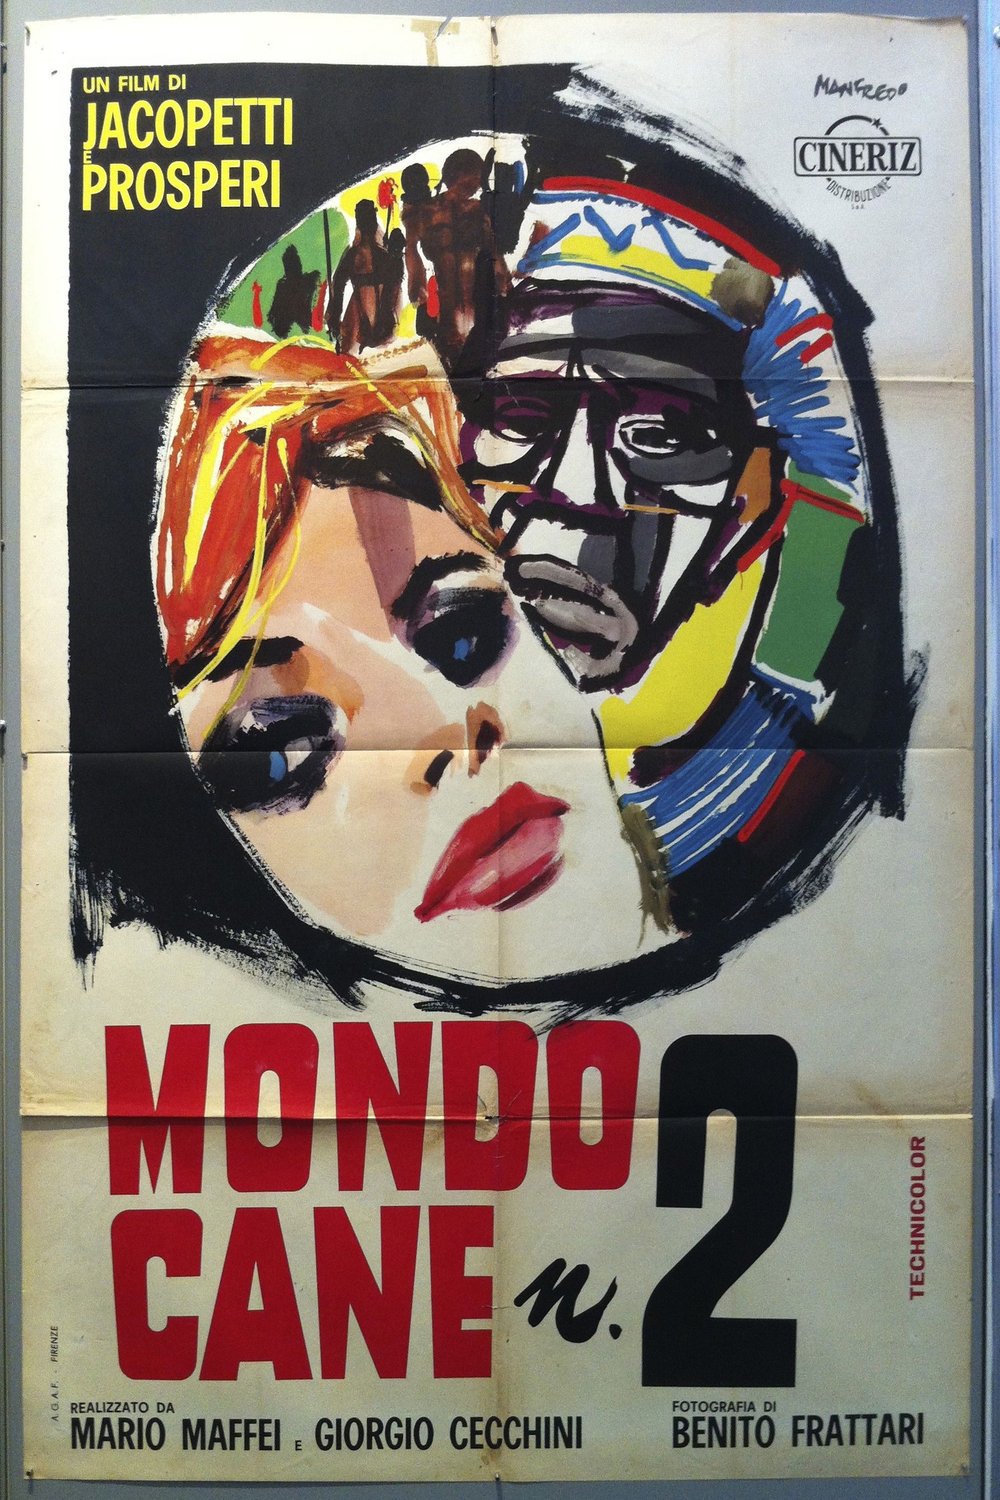 L'affiche originale du film Mondo cane n. 2 en italien